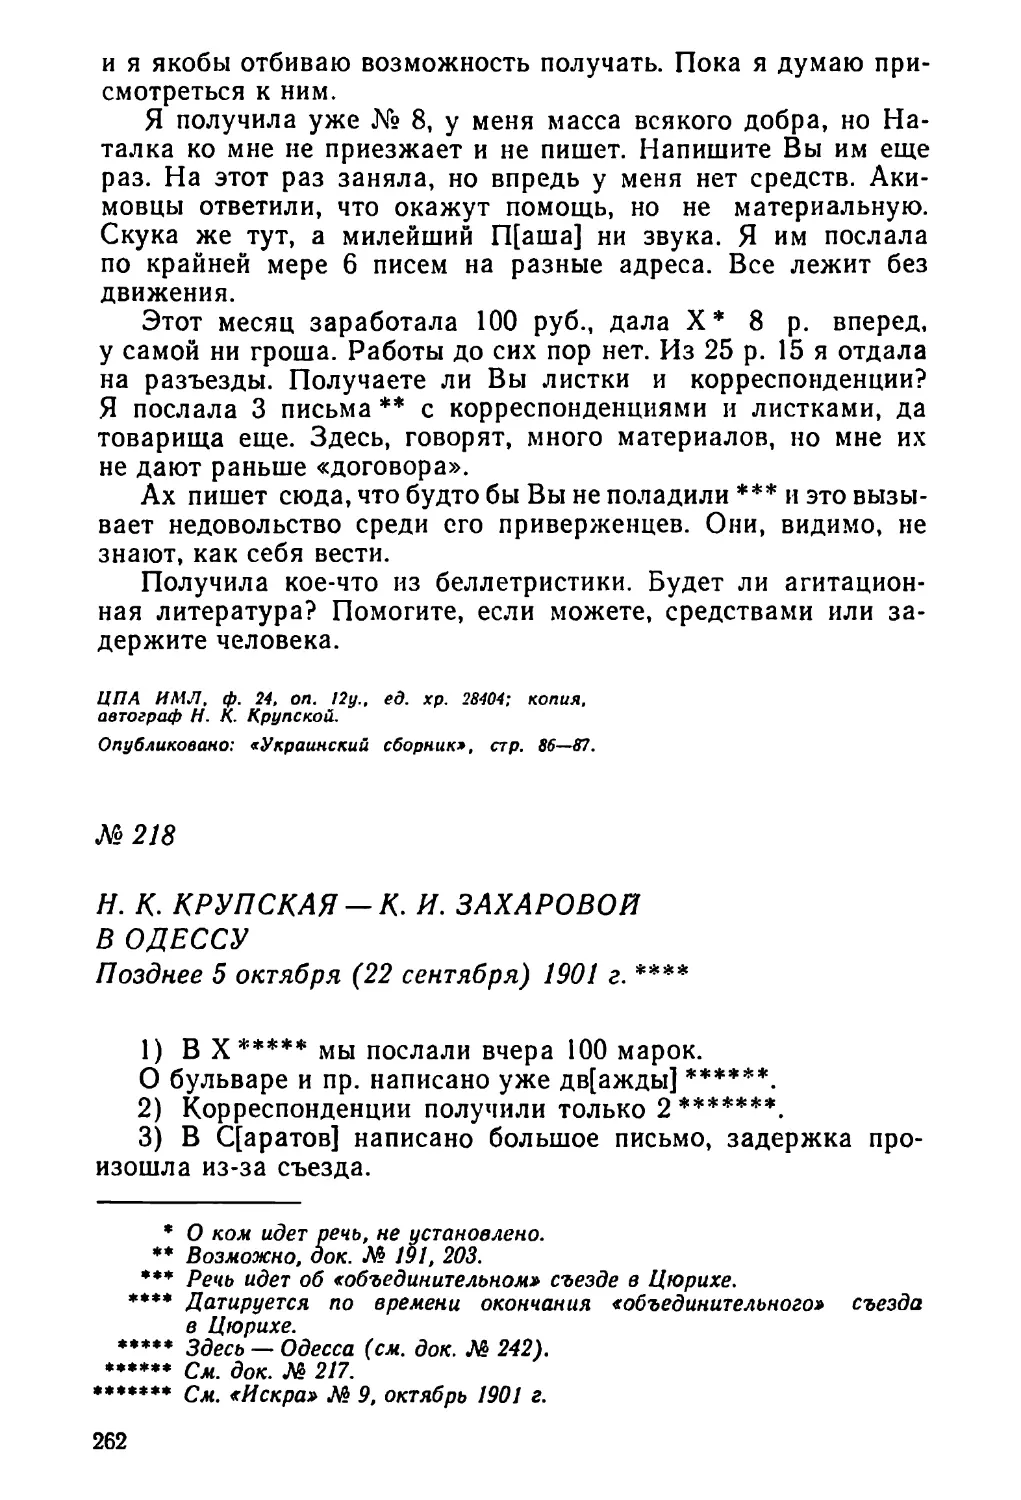 № 218 Н. К. Крупская — К. И. Захаровой в Одессу. Позднее 5 октября